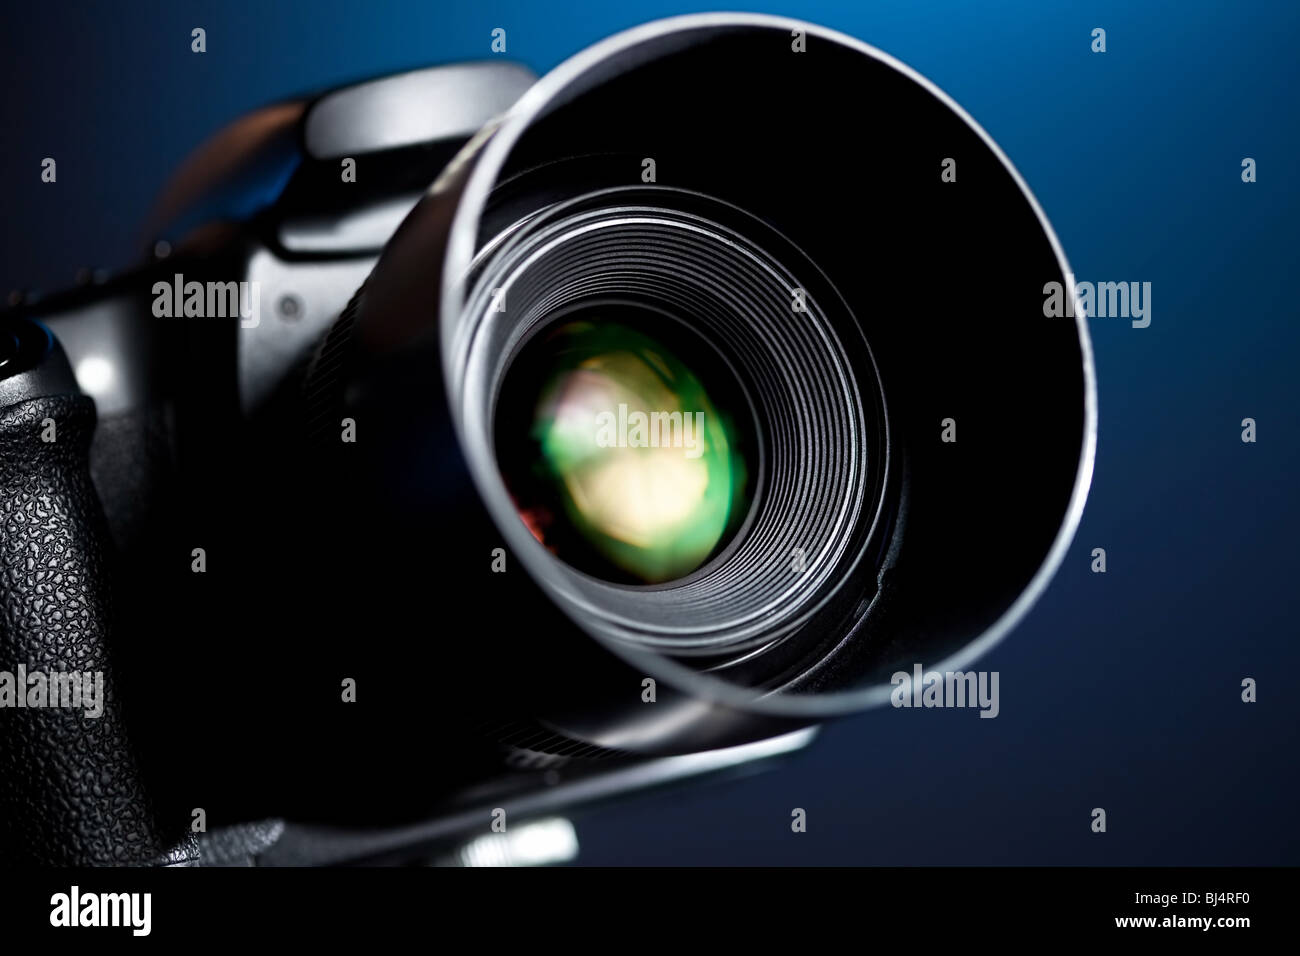 Cámara fotográfica profesional fotografías e imágenes de alta resolución -  Página 2 - Alamy